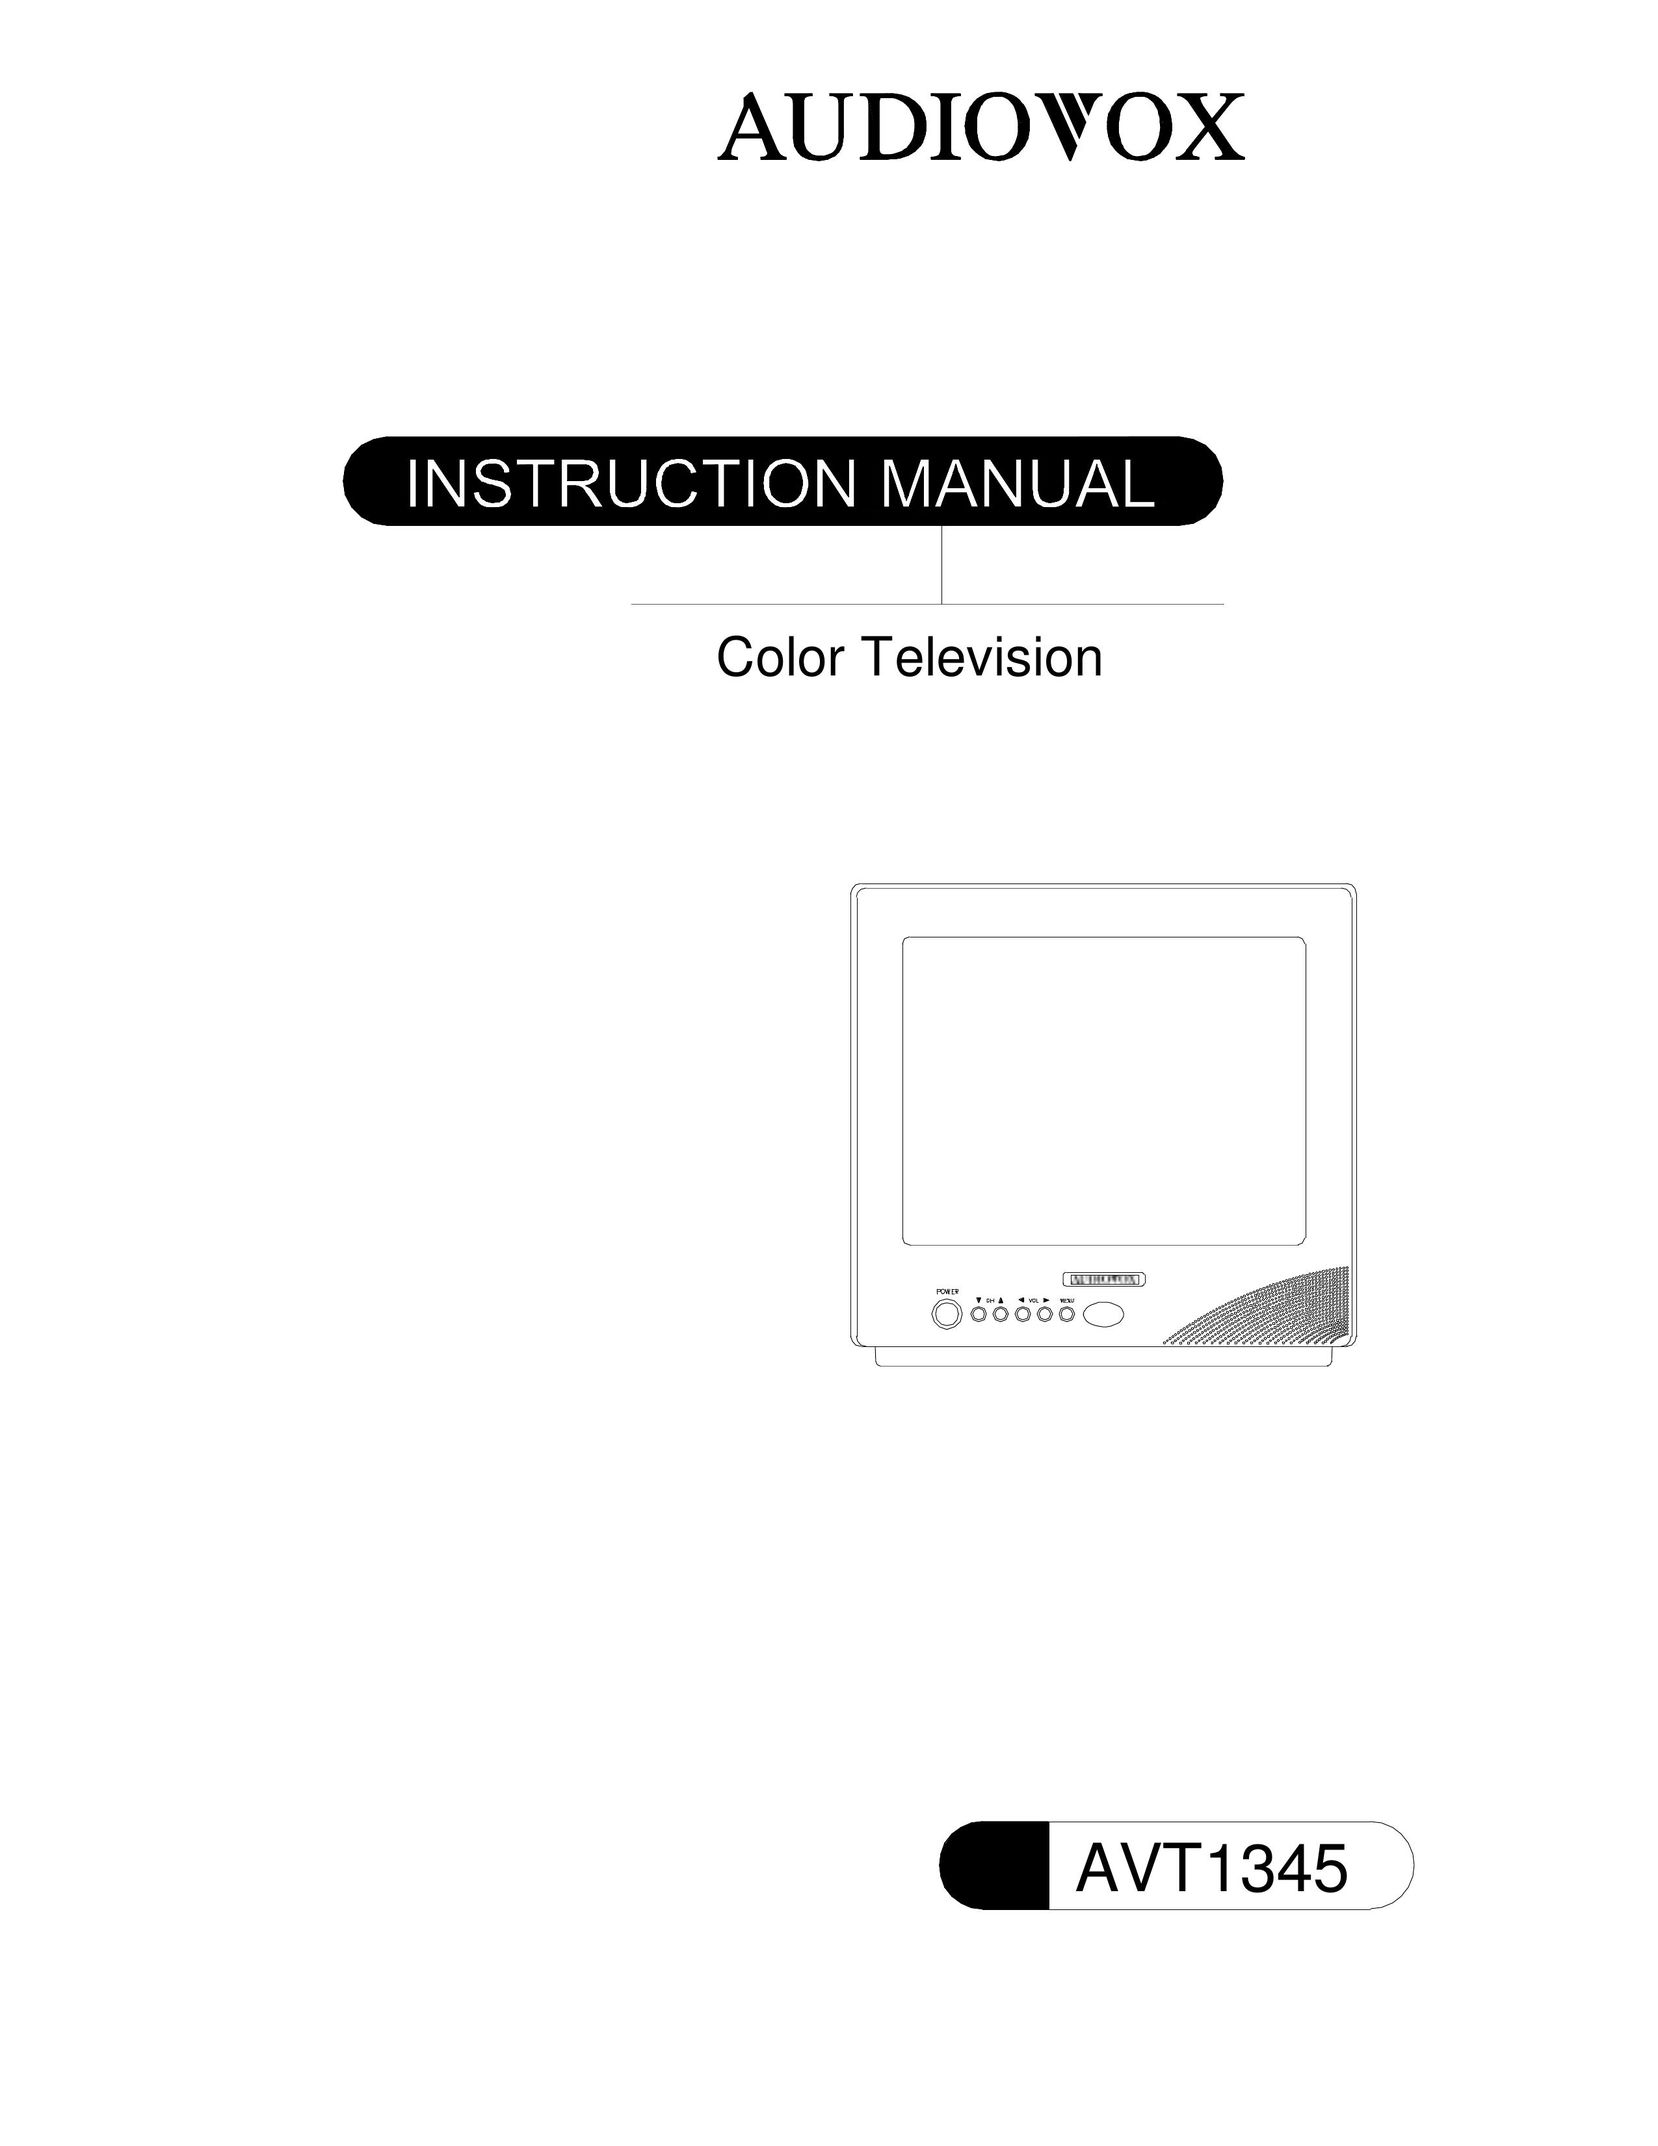 Audiovox AVT1345 CRT Television User Manual